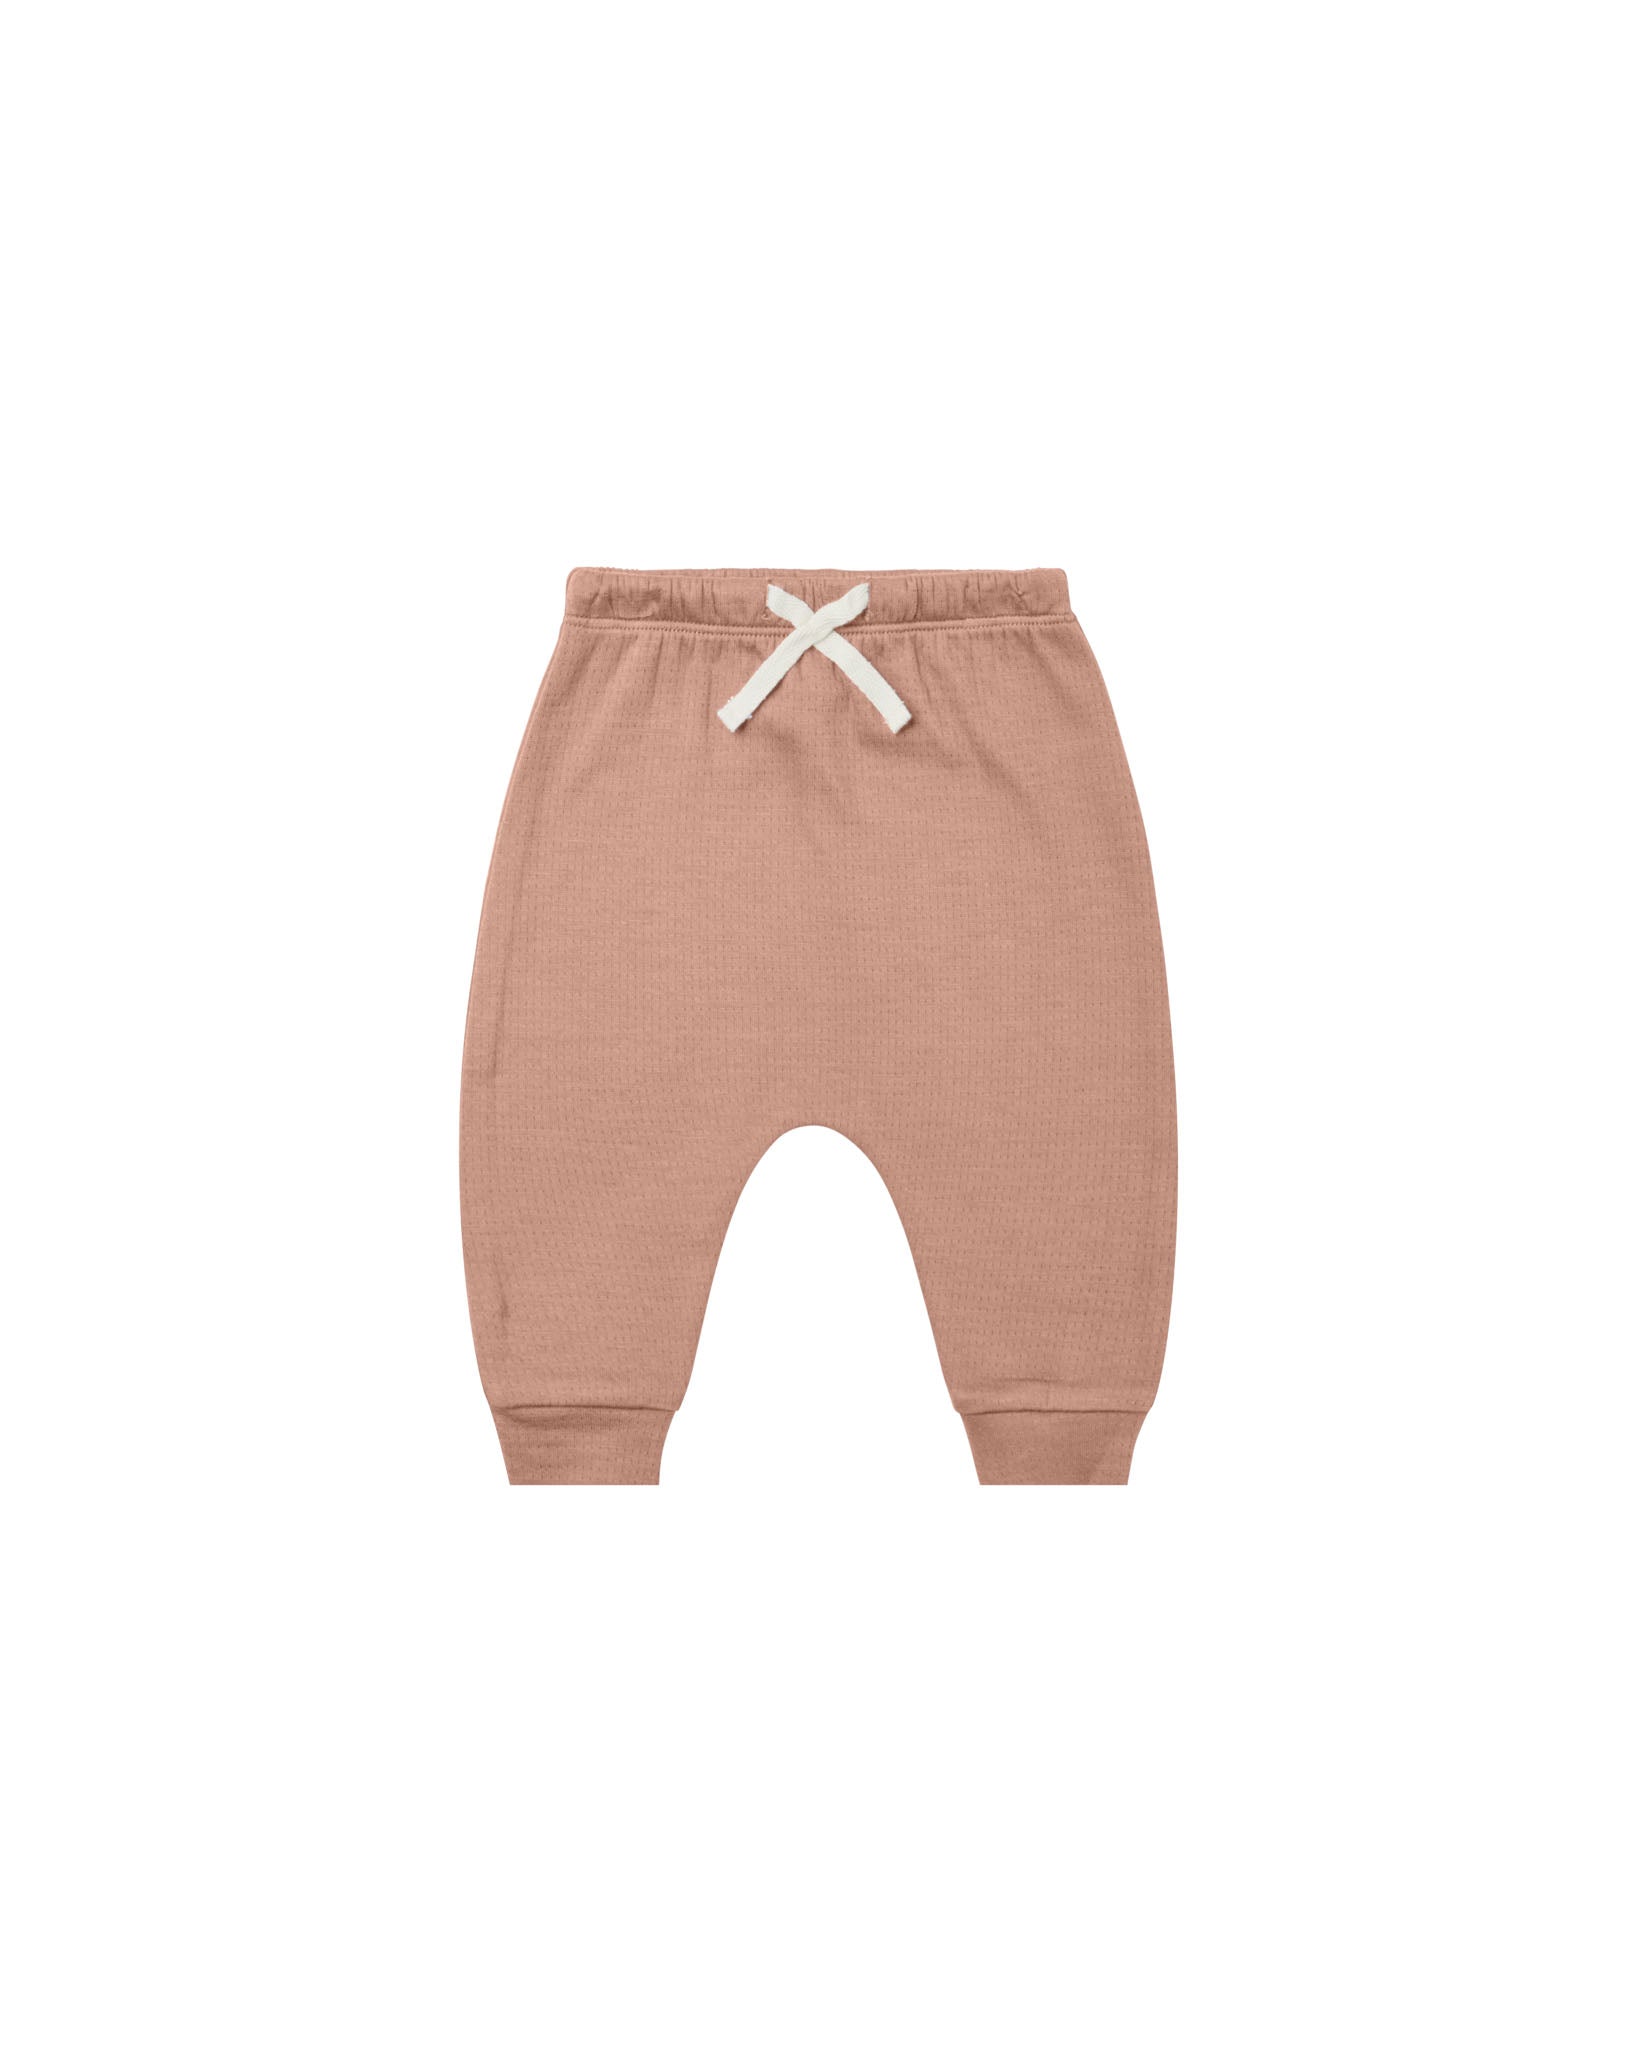 Rose Pocket Sweatshirt & Pointelle Sweatpants - Twinkle Twinkle Little One